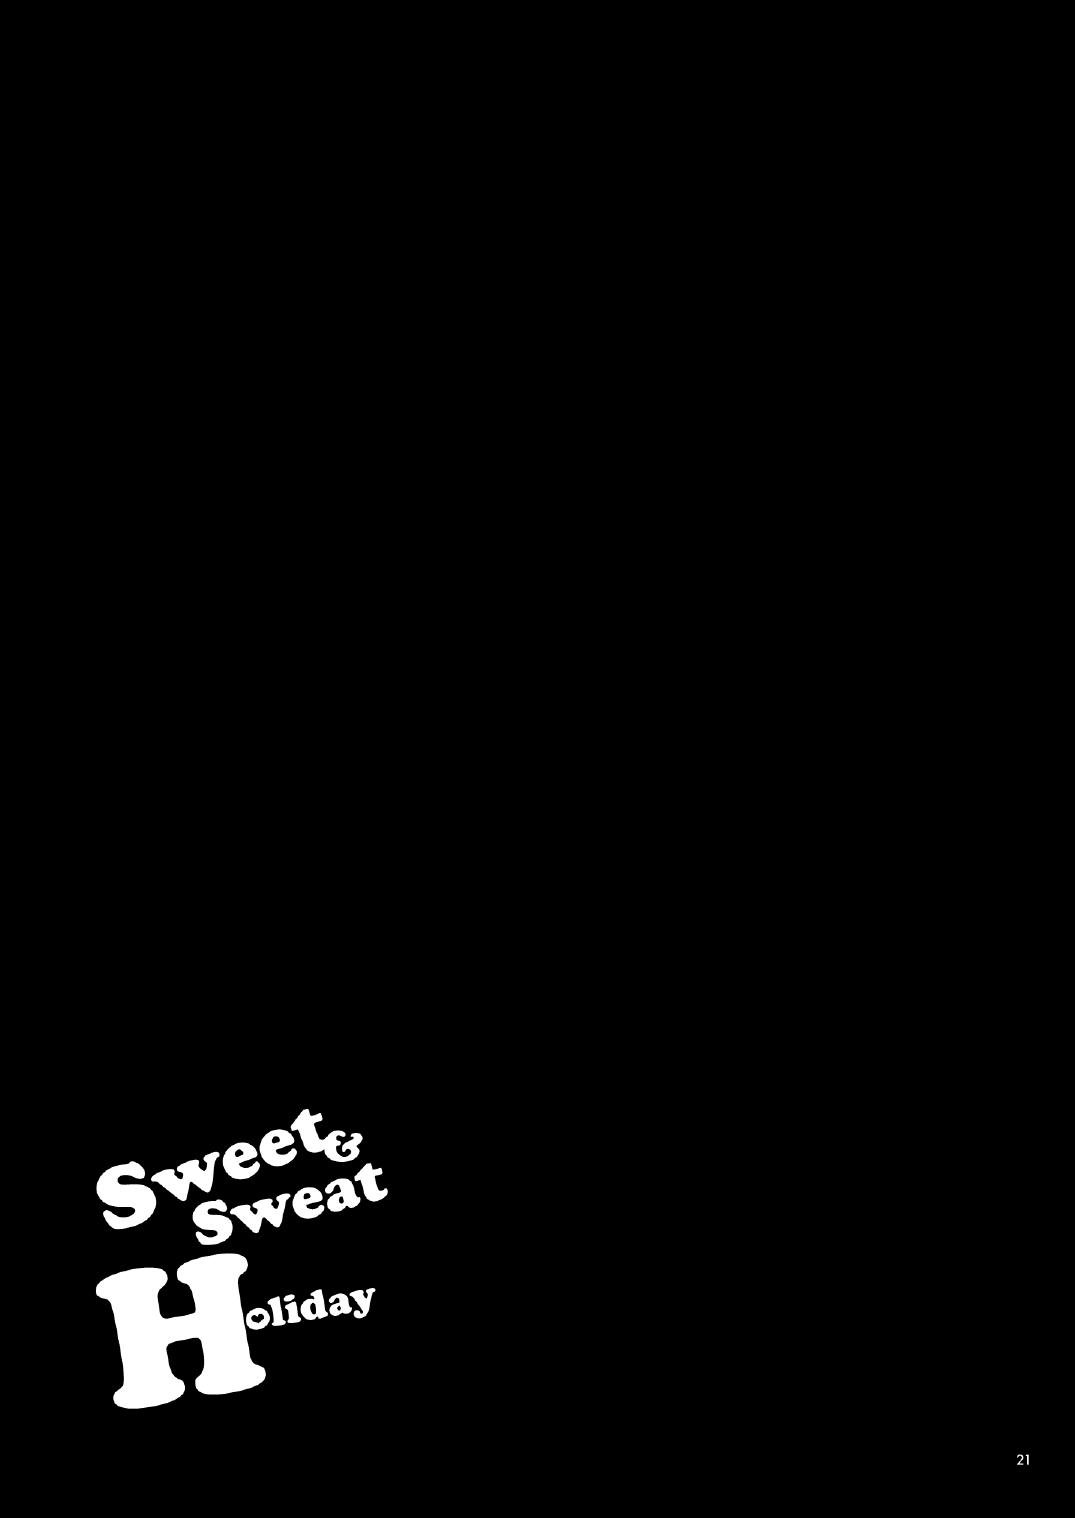 sa-ki Sweet and Sweat Holiday 19